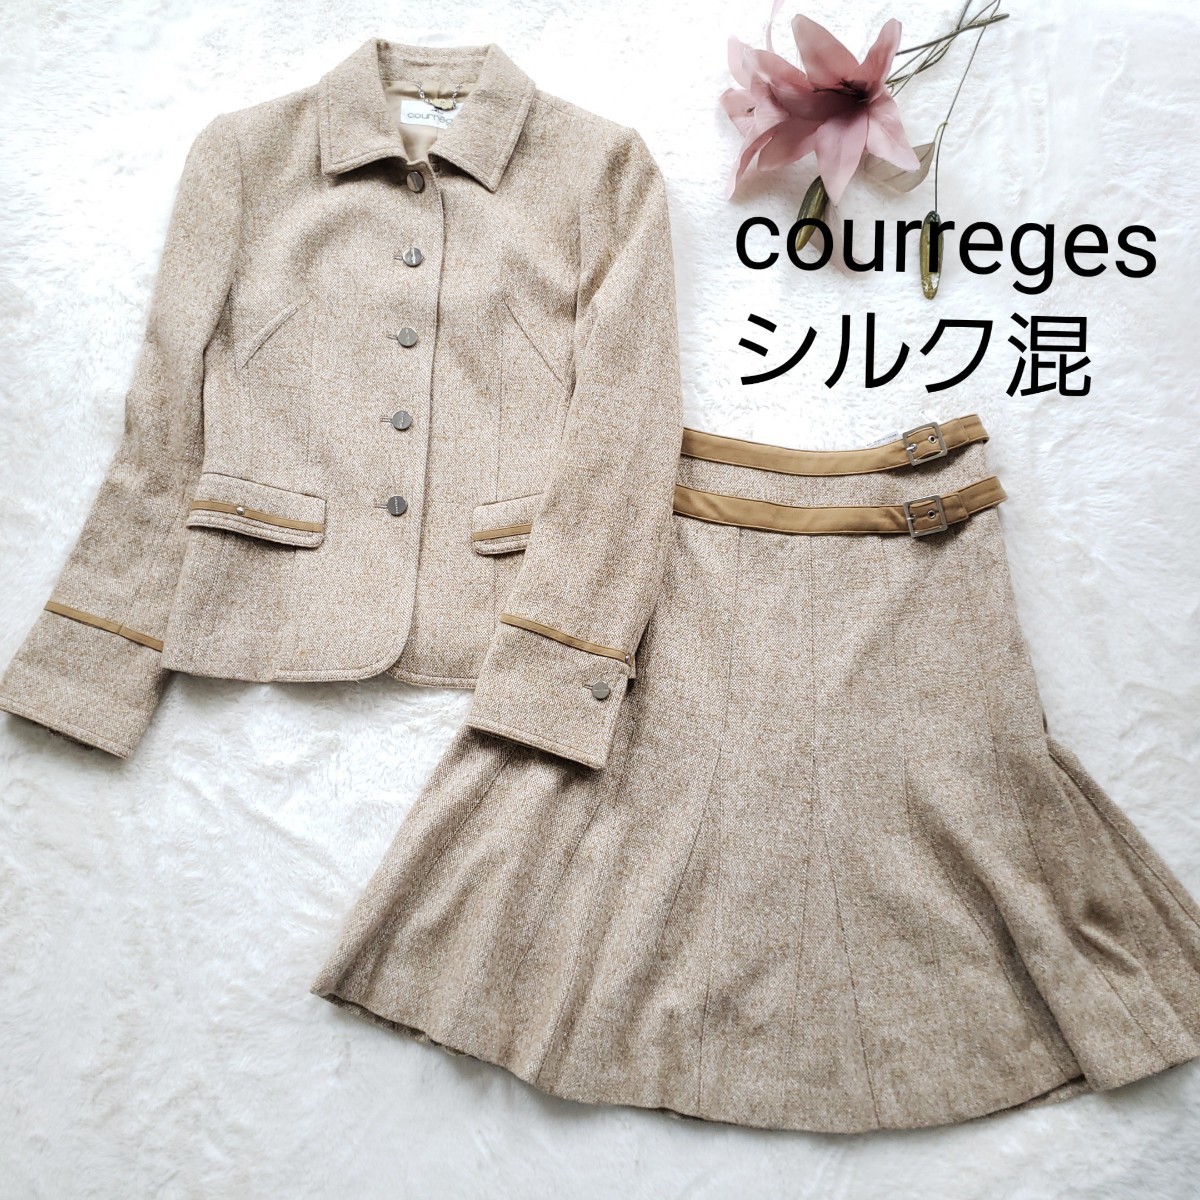 美品courregesシルク混ウールステンカラージャケットスカートセット スーツ セットアップ ツイード